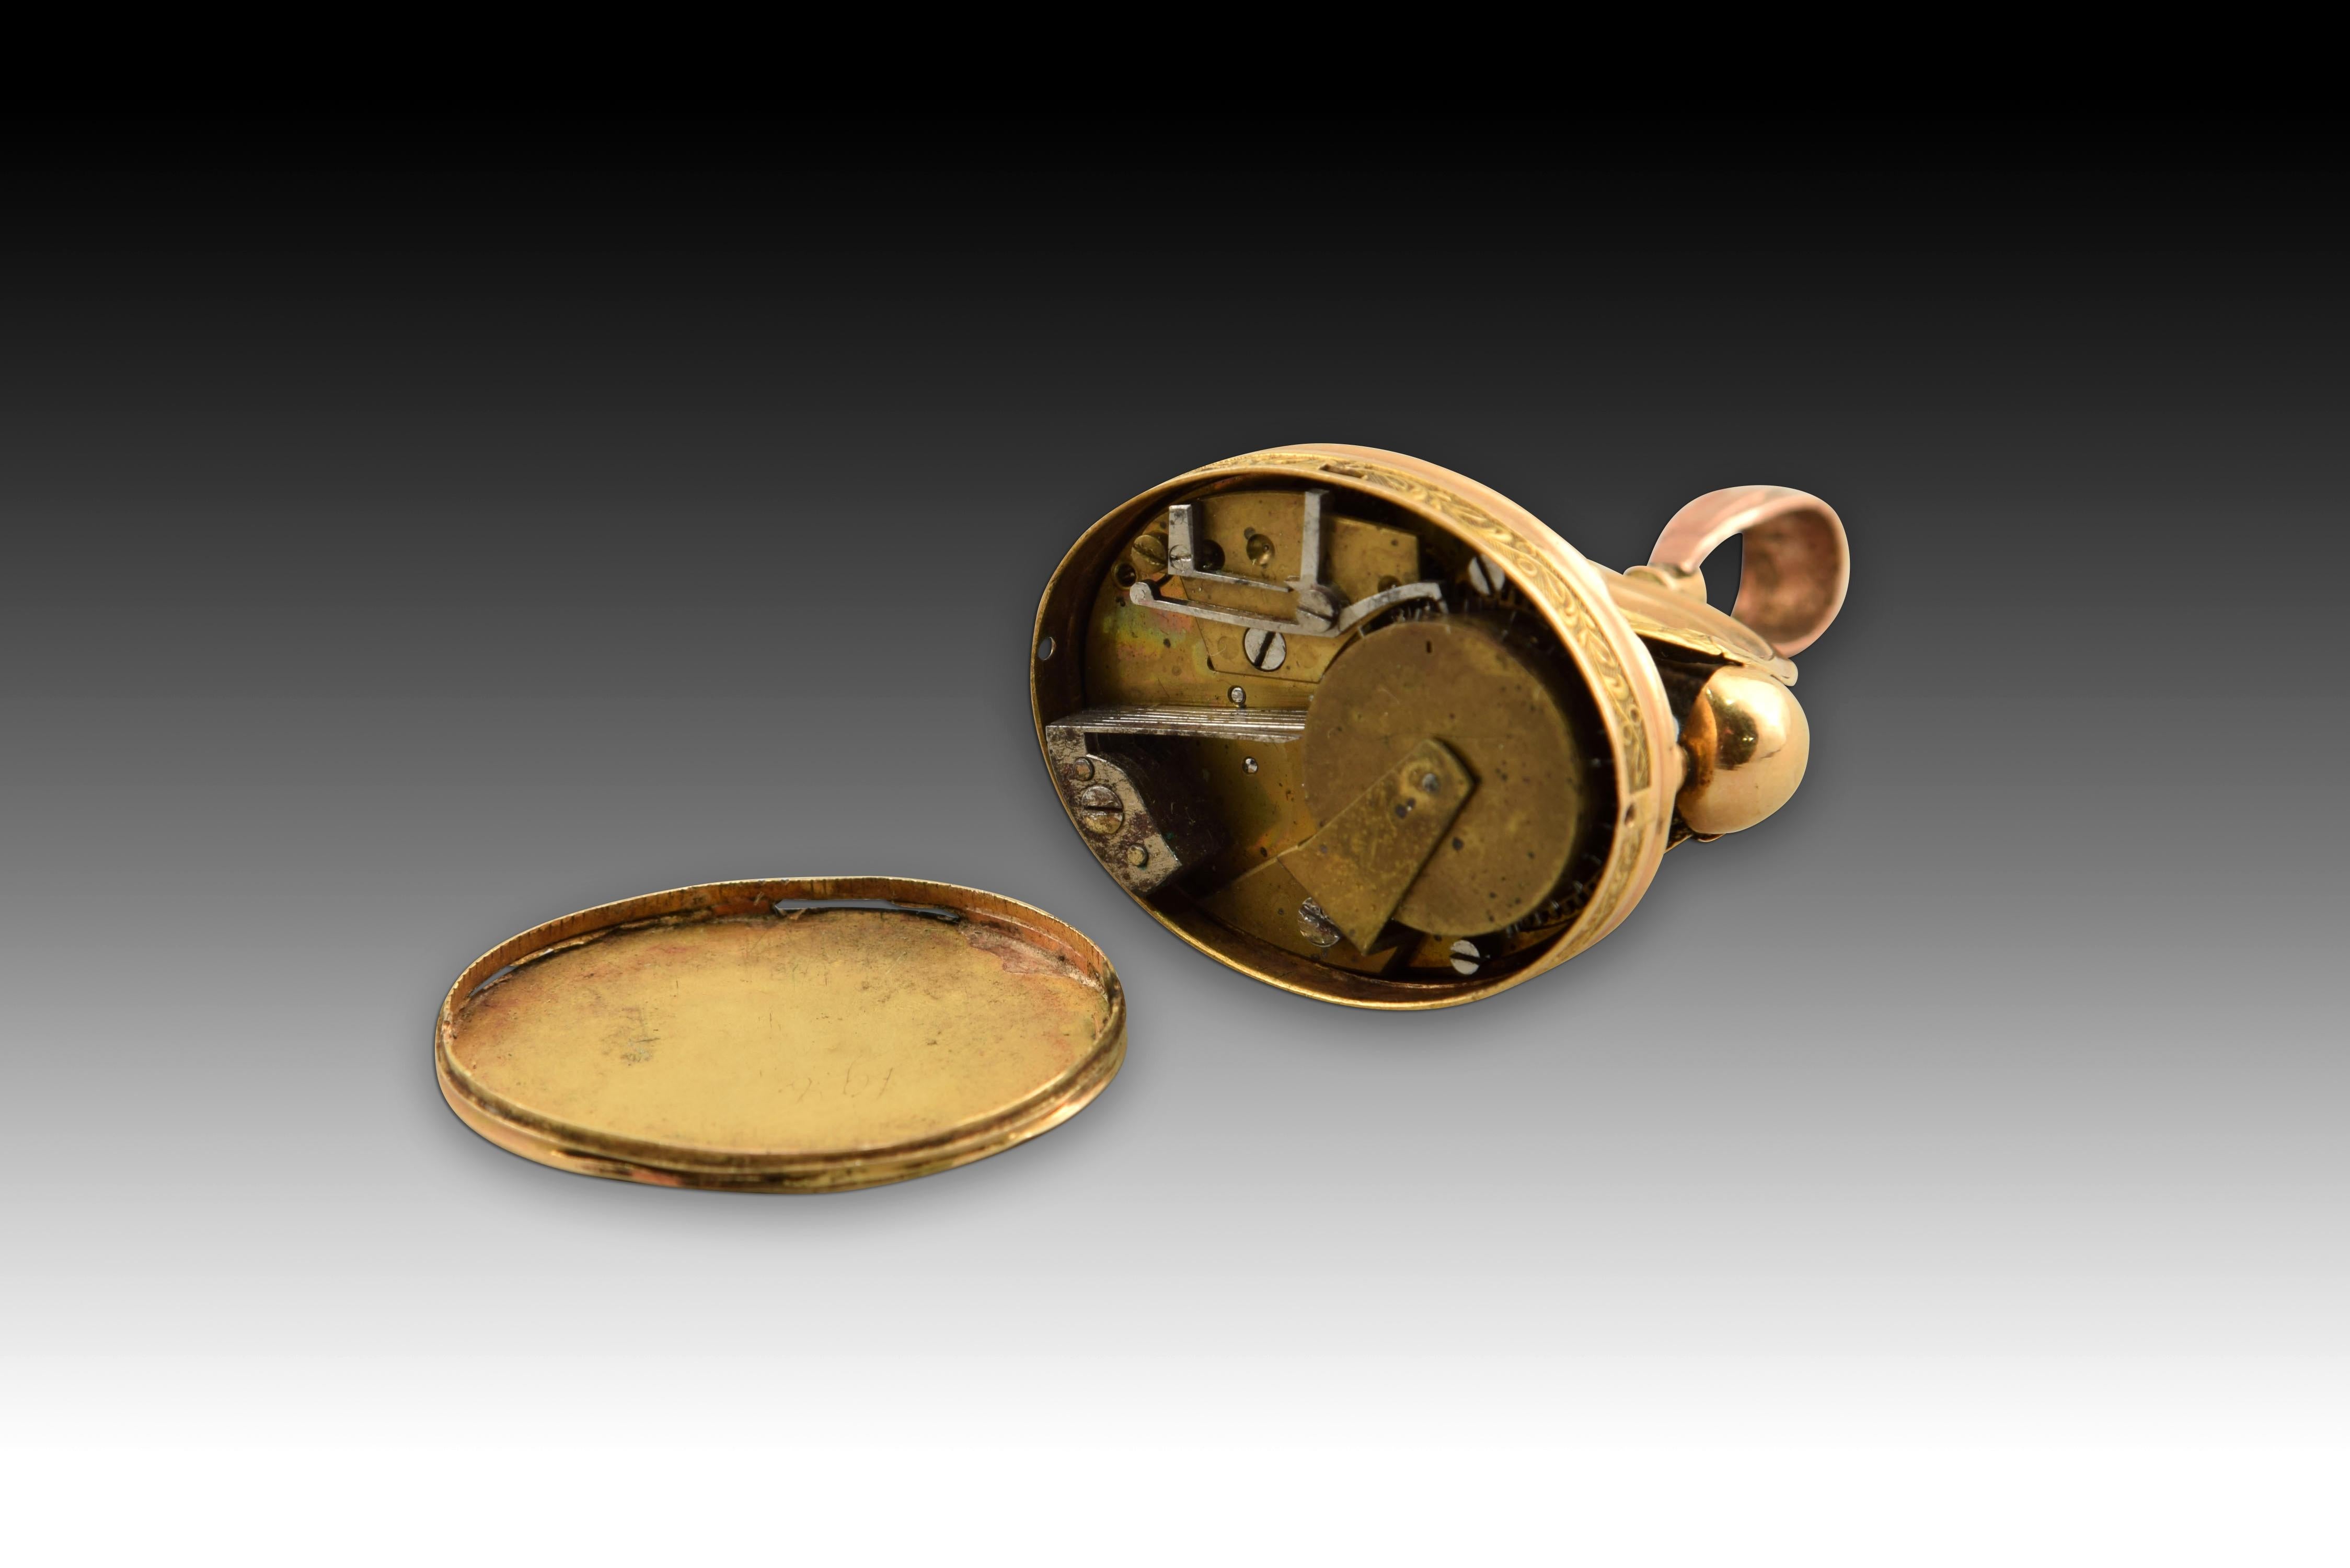 Pendentif avec boîte à musique. L'or. Suisse, vers 1820. 
Pendentif en or des alliages avec différents métaux pour lui donner des tonalités différentes qui présente une pièce dans la partie supérieure (qui enroule le mécanisme de la boîte à